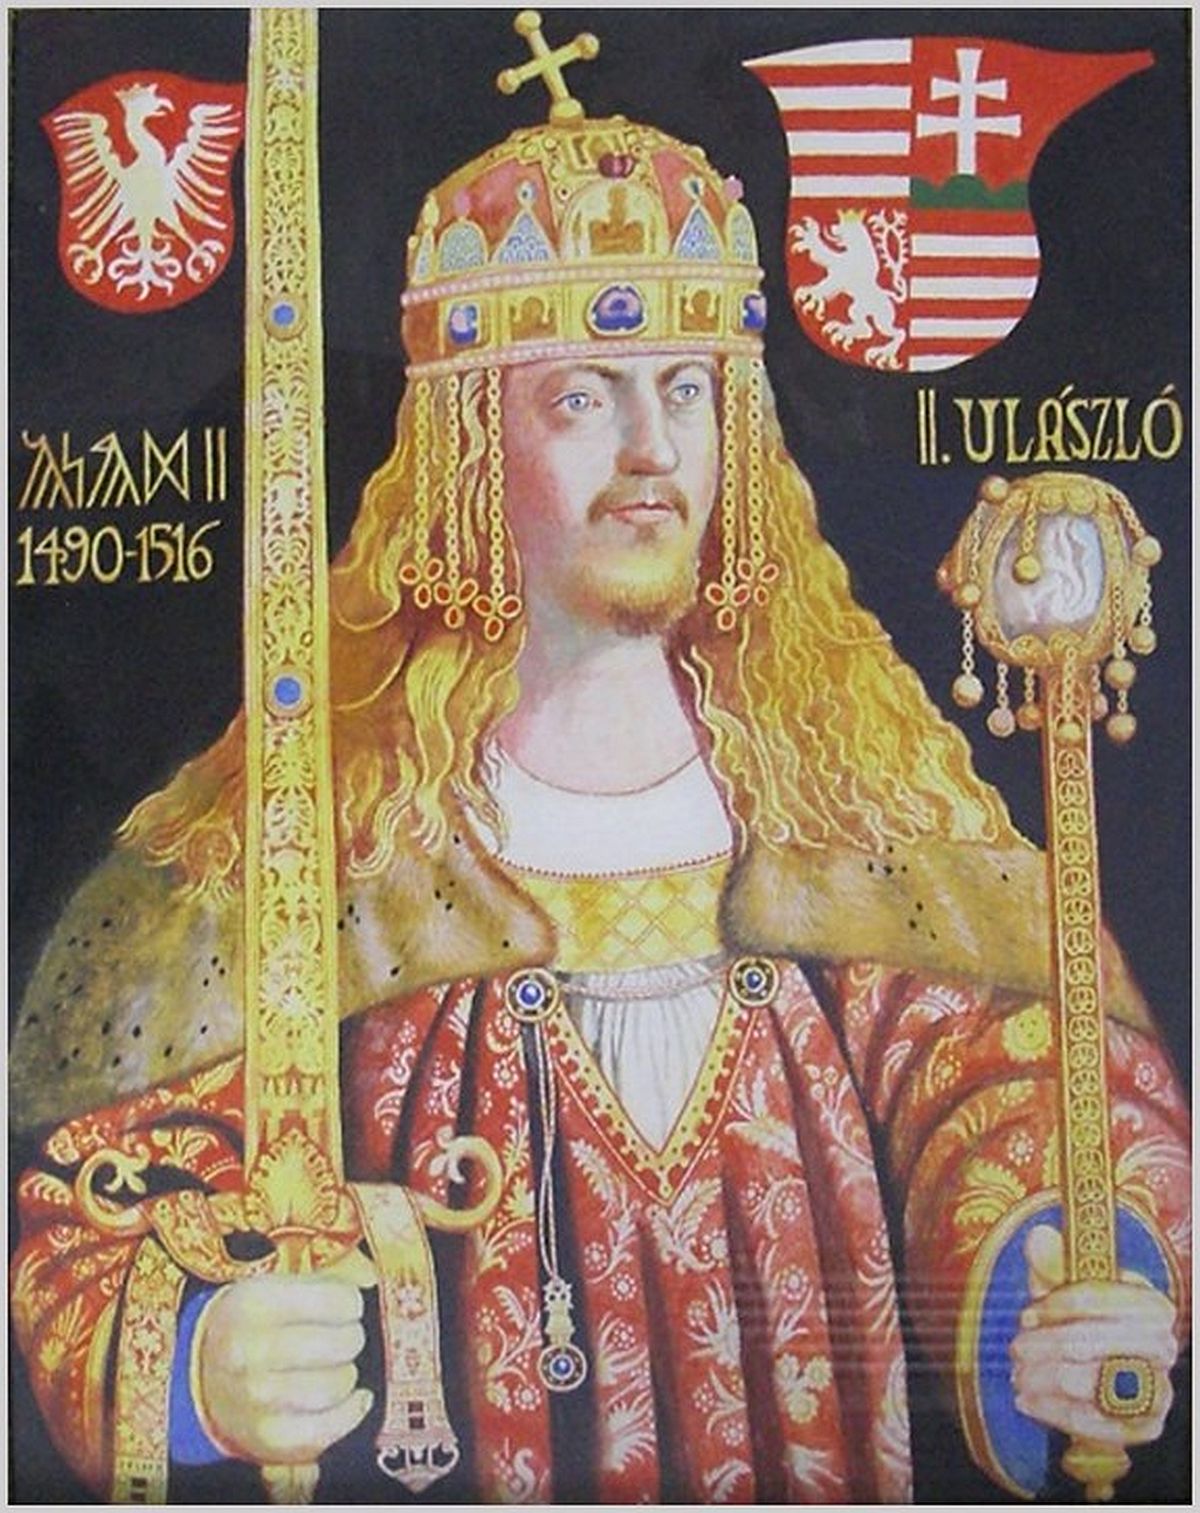 II. Ulászló magyar királlyá koronázása Székesfehérváron